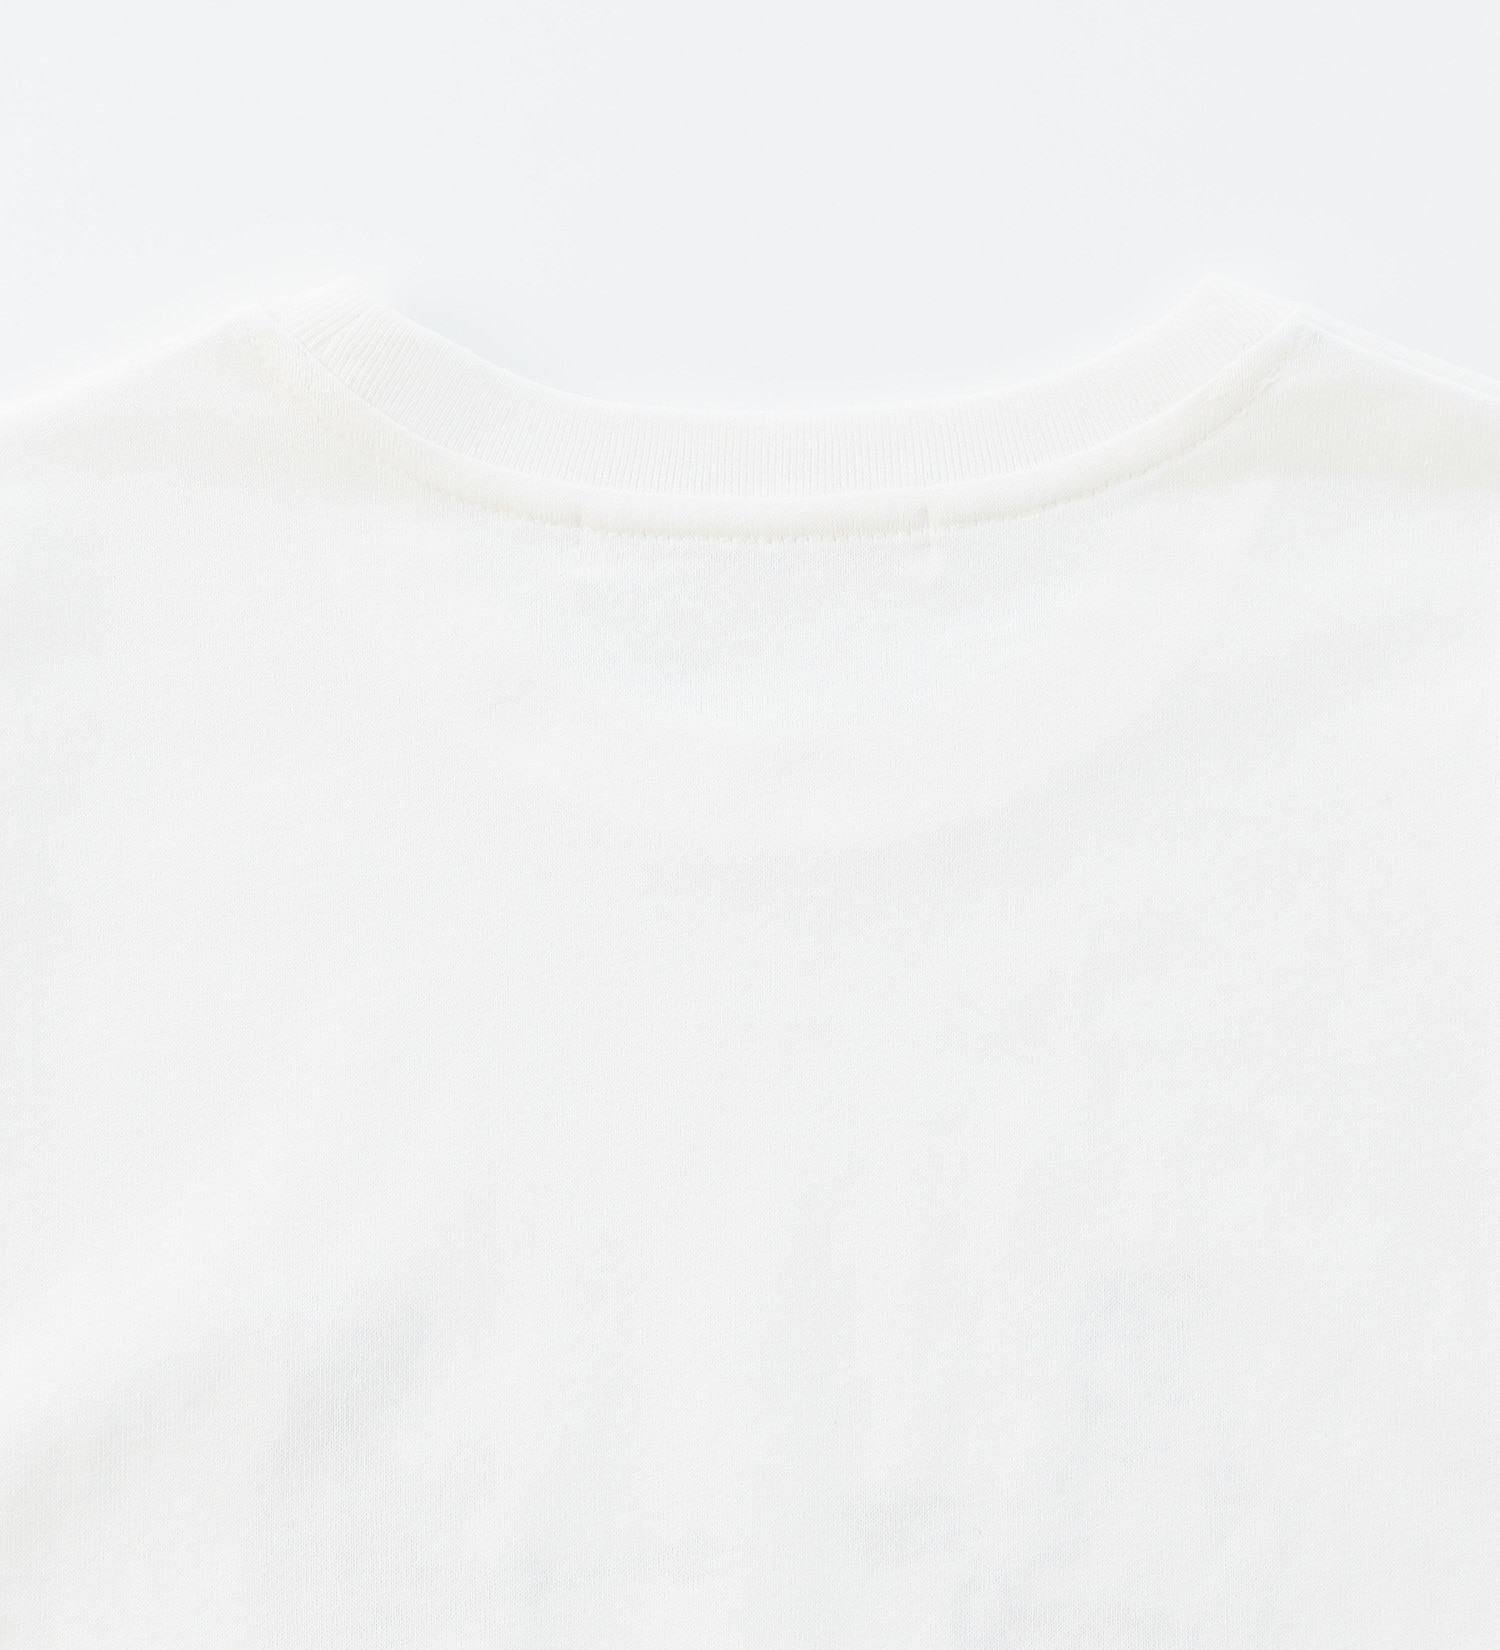 EDWIN(エドウイン)の【BLACKFRIDAY】手書き風プリントTシャツ 半袖（キャンプ）【アウトレット店舗・WEB限定】|トップス/Tシャツ/カットソー/レディース|ホワイト